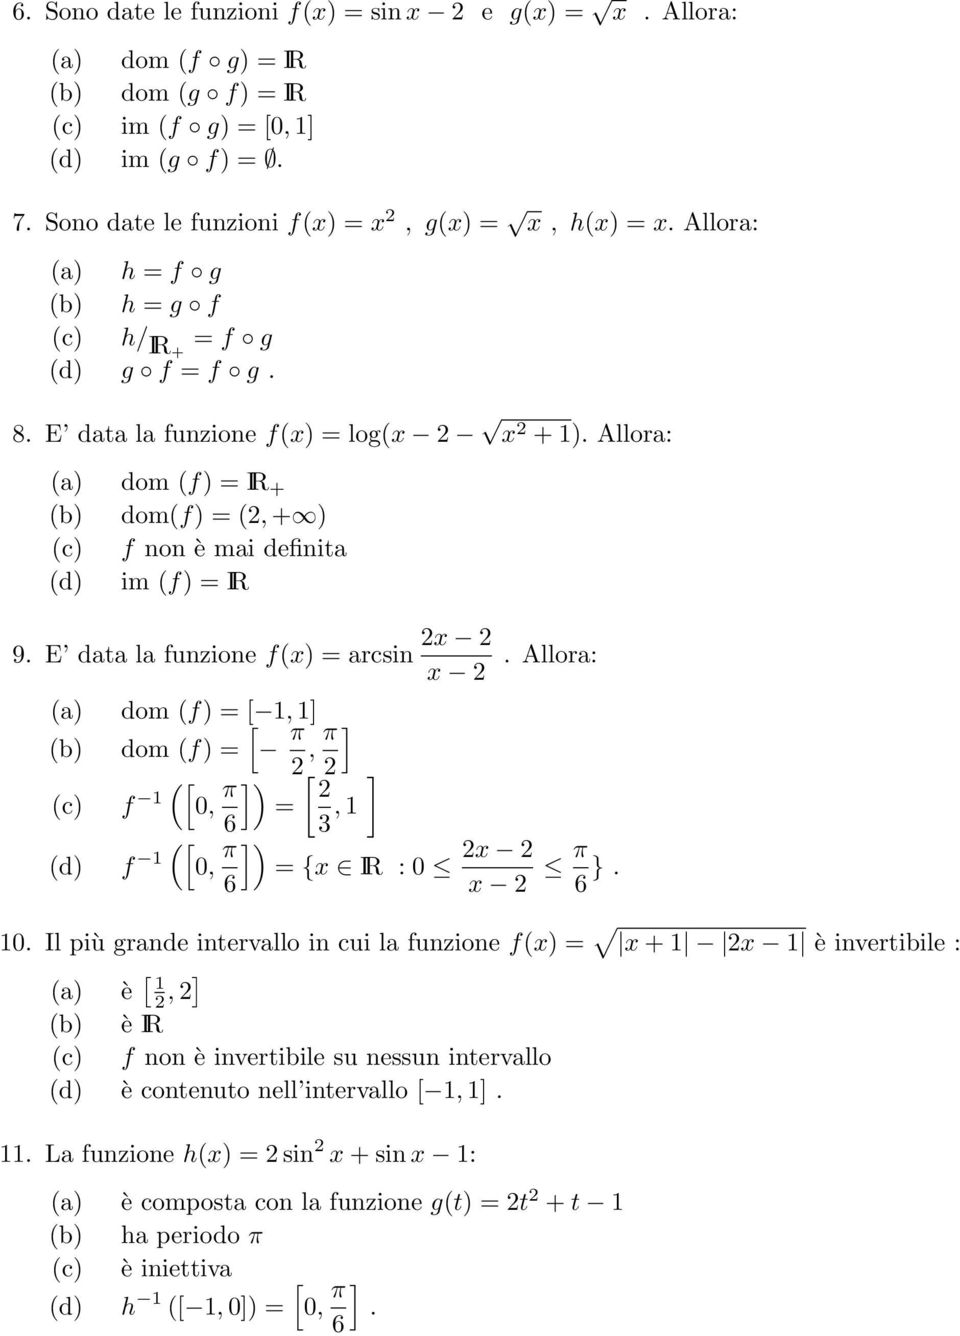 dom f) = [ 1, [ 1] b) dom f) = π, π ] [ c) f 1 0, π ]) [ ] = 6 3, 1 [ d) f 1 0, π ]) = {x IR : 0 x 6 x π 6 } 10 Il più grande intervallo in cui la funzione fx) = x + 1 x 1 è invertibile : a) è [ 1, ]